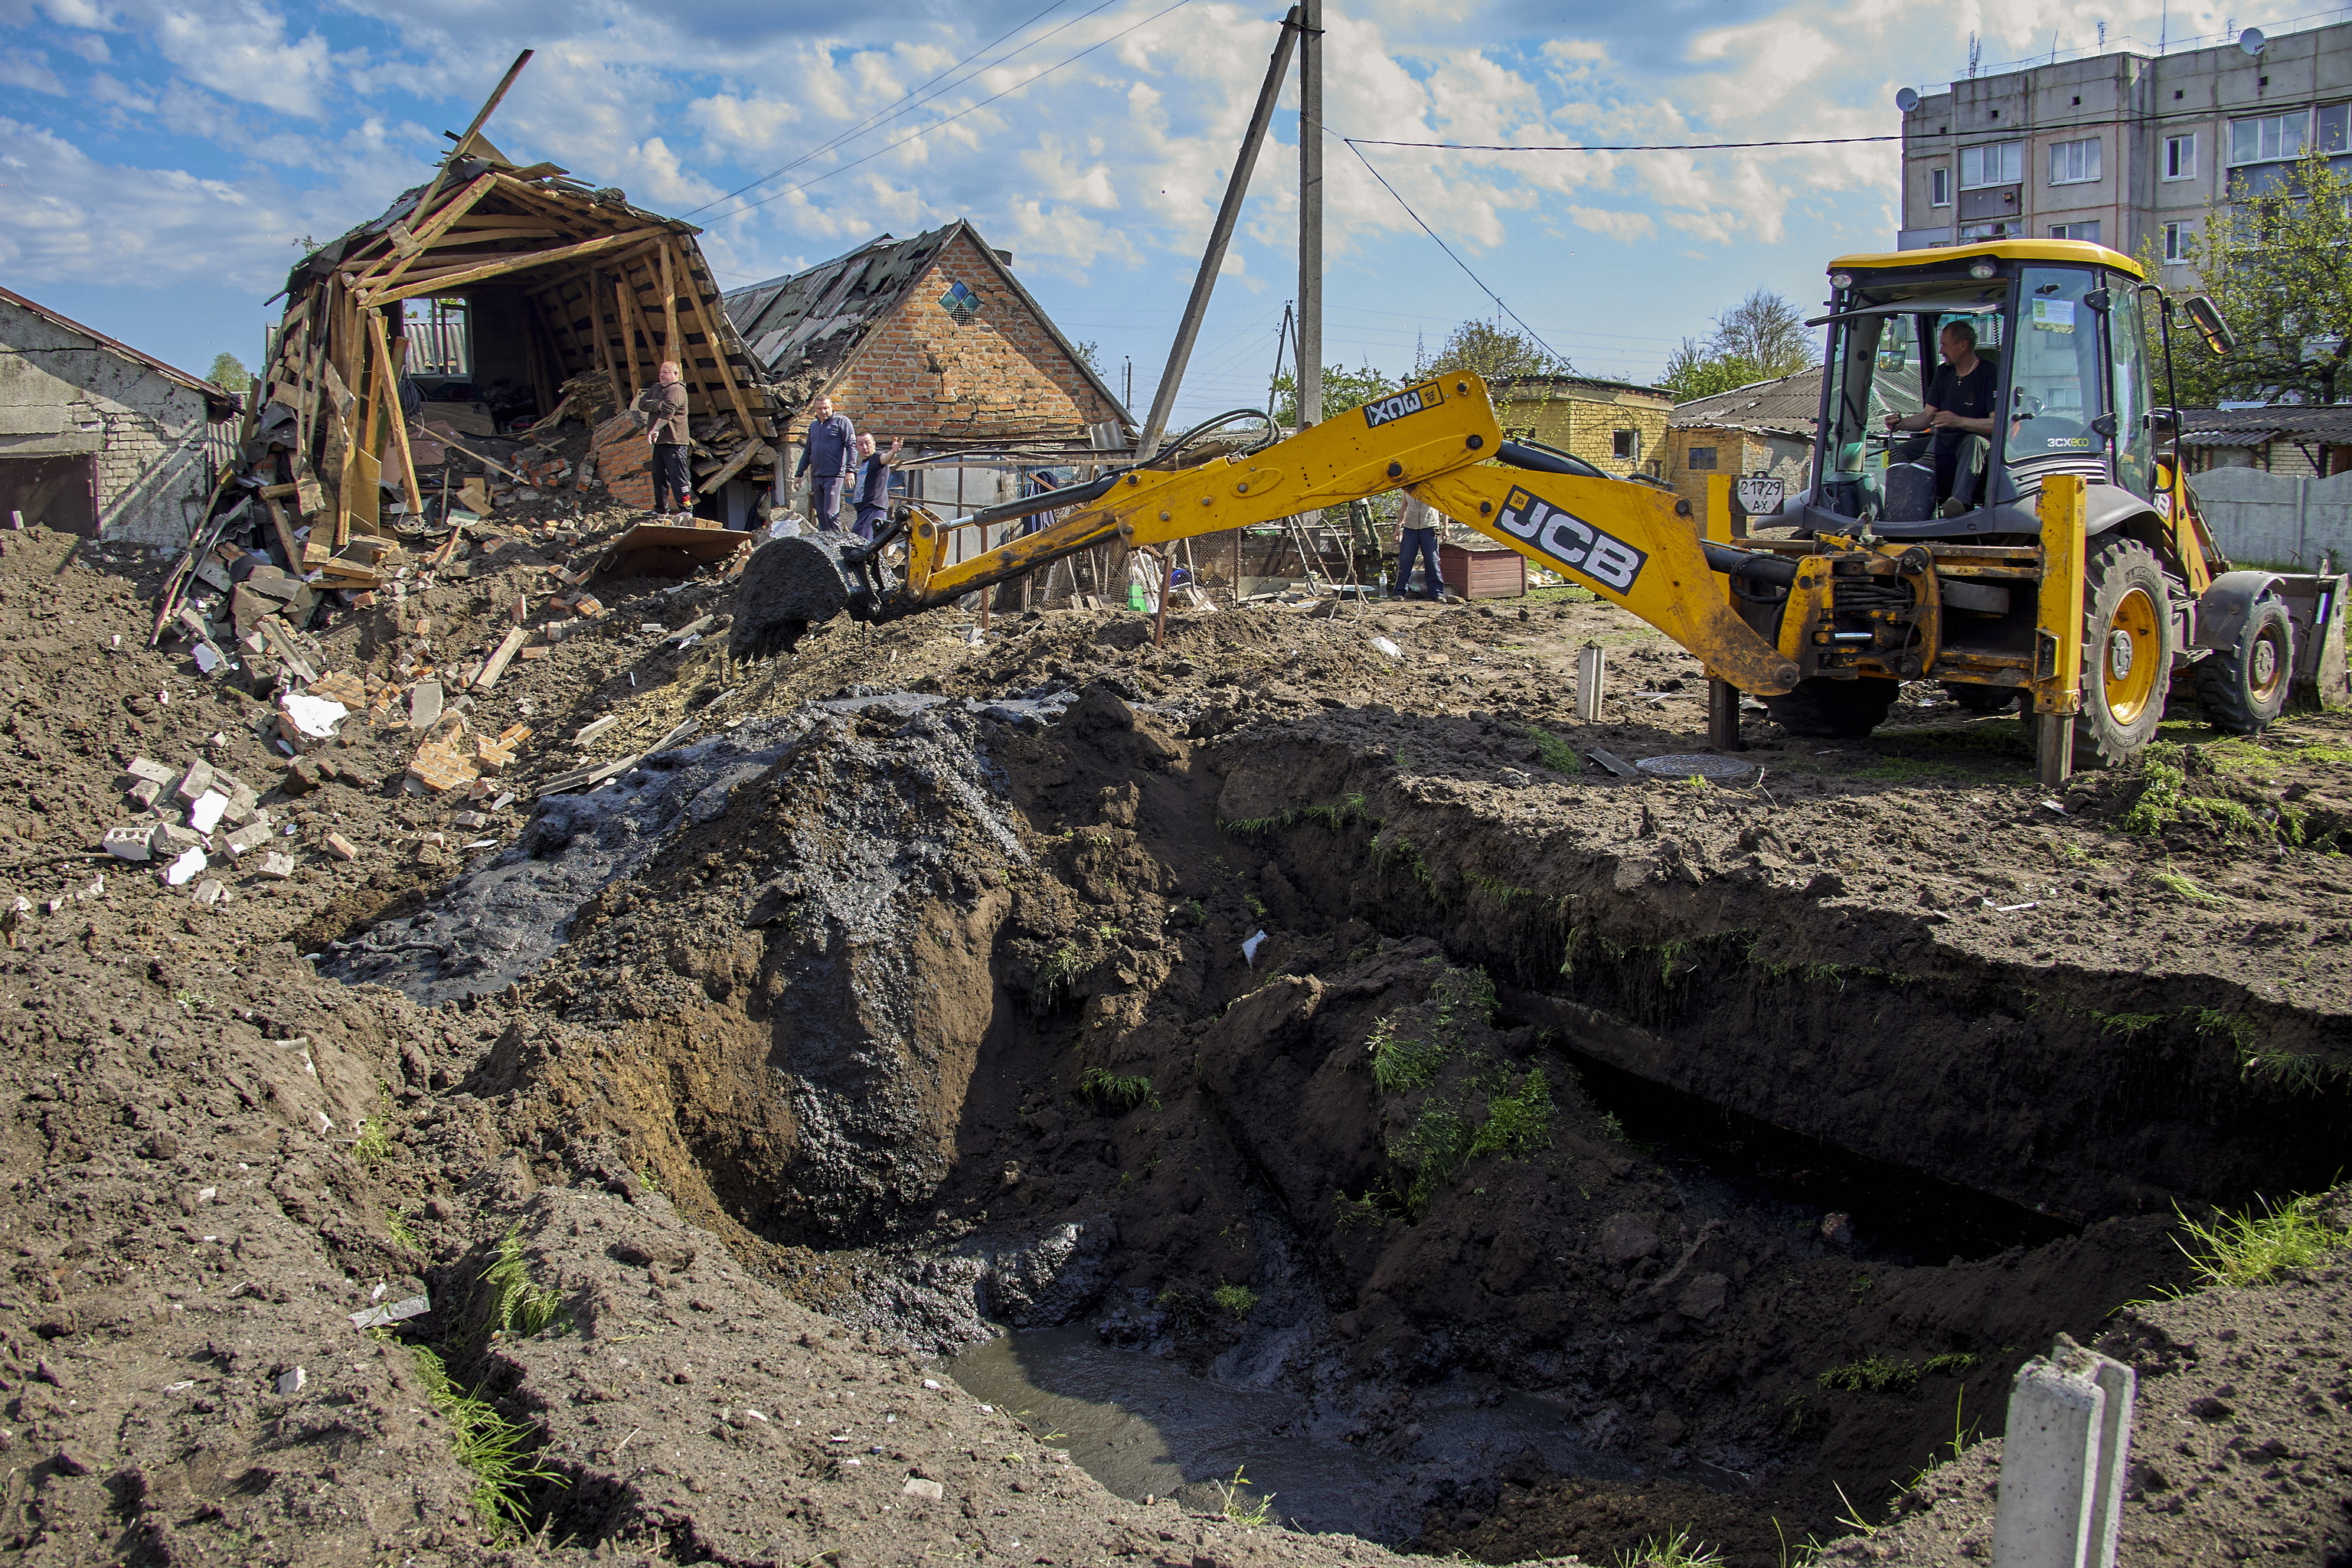 Locales limpian los escombros y reparan las tuberas daadas despus de un ataque con cohetes en el asentamiento de Zolochiv.